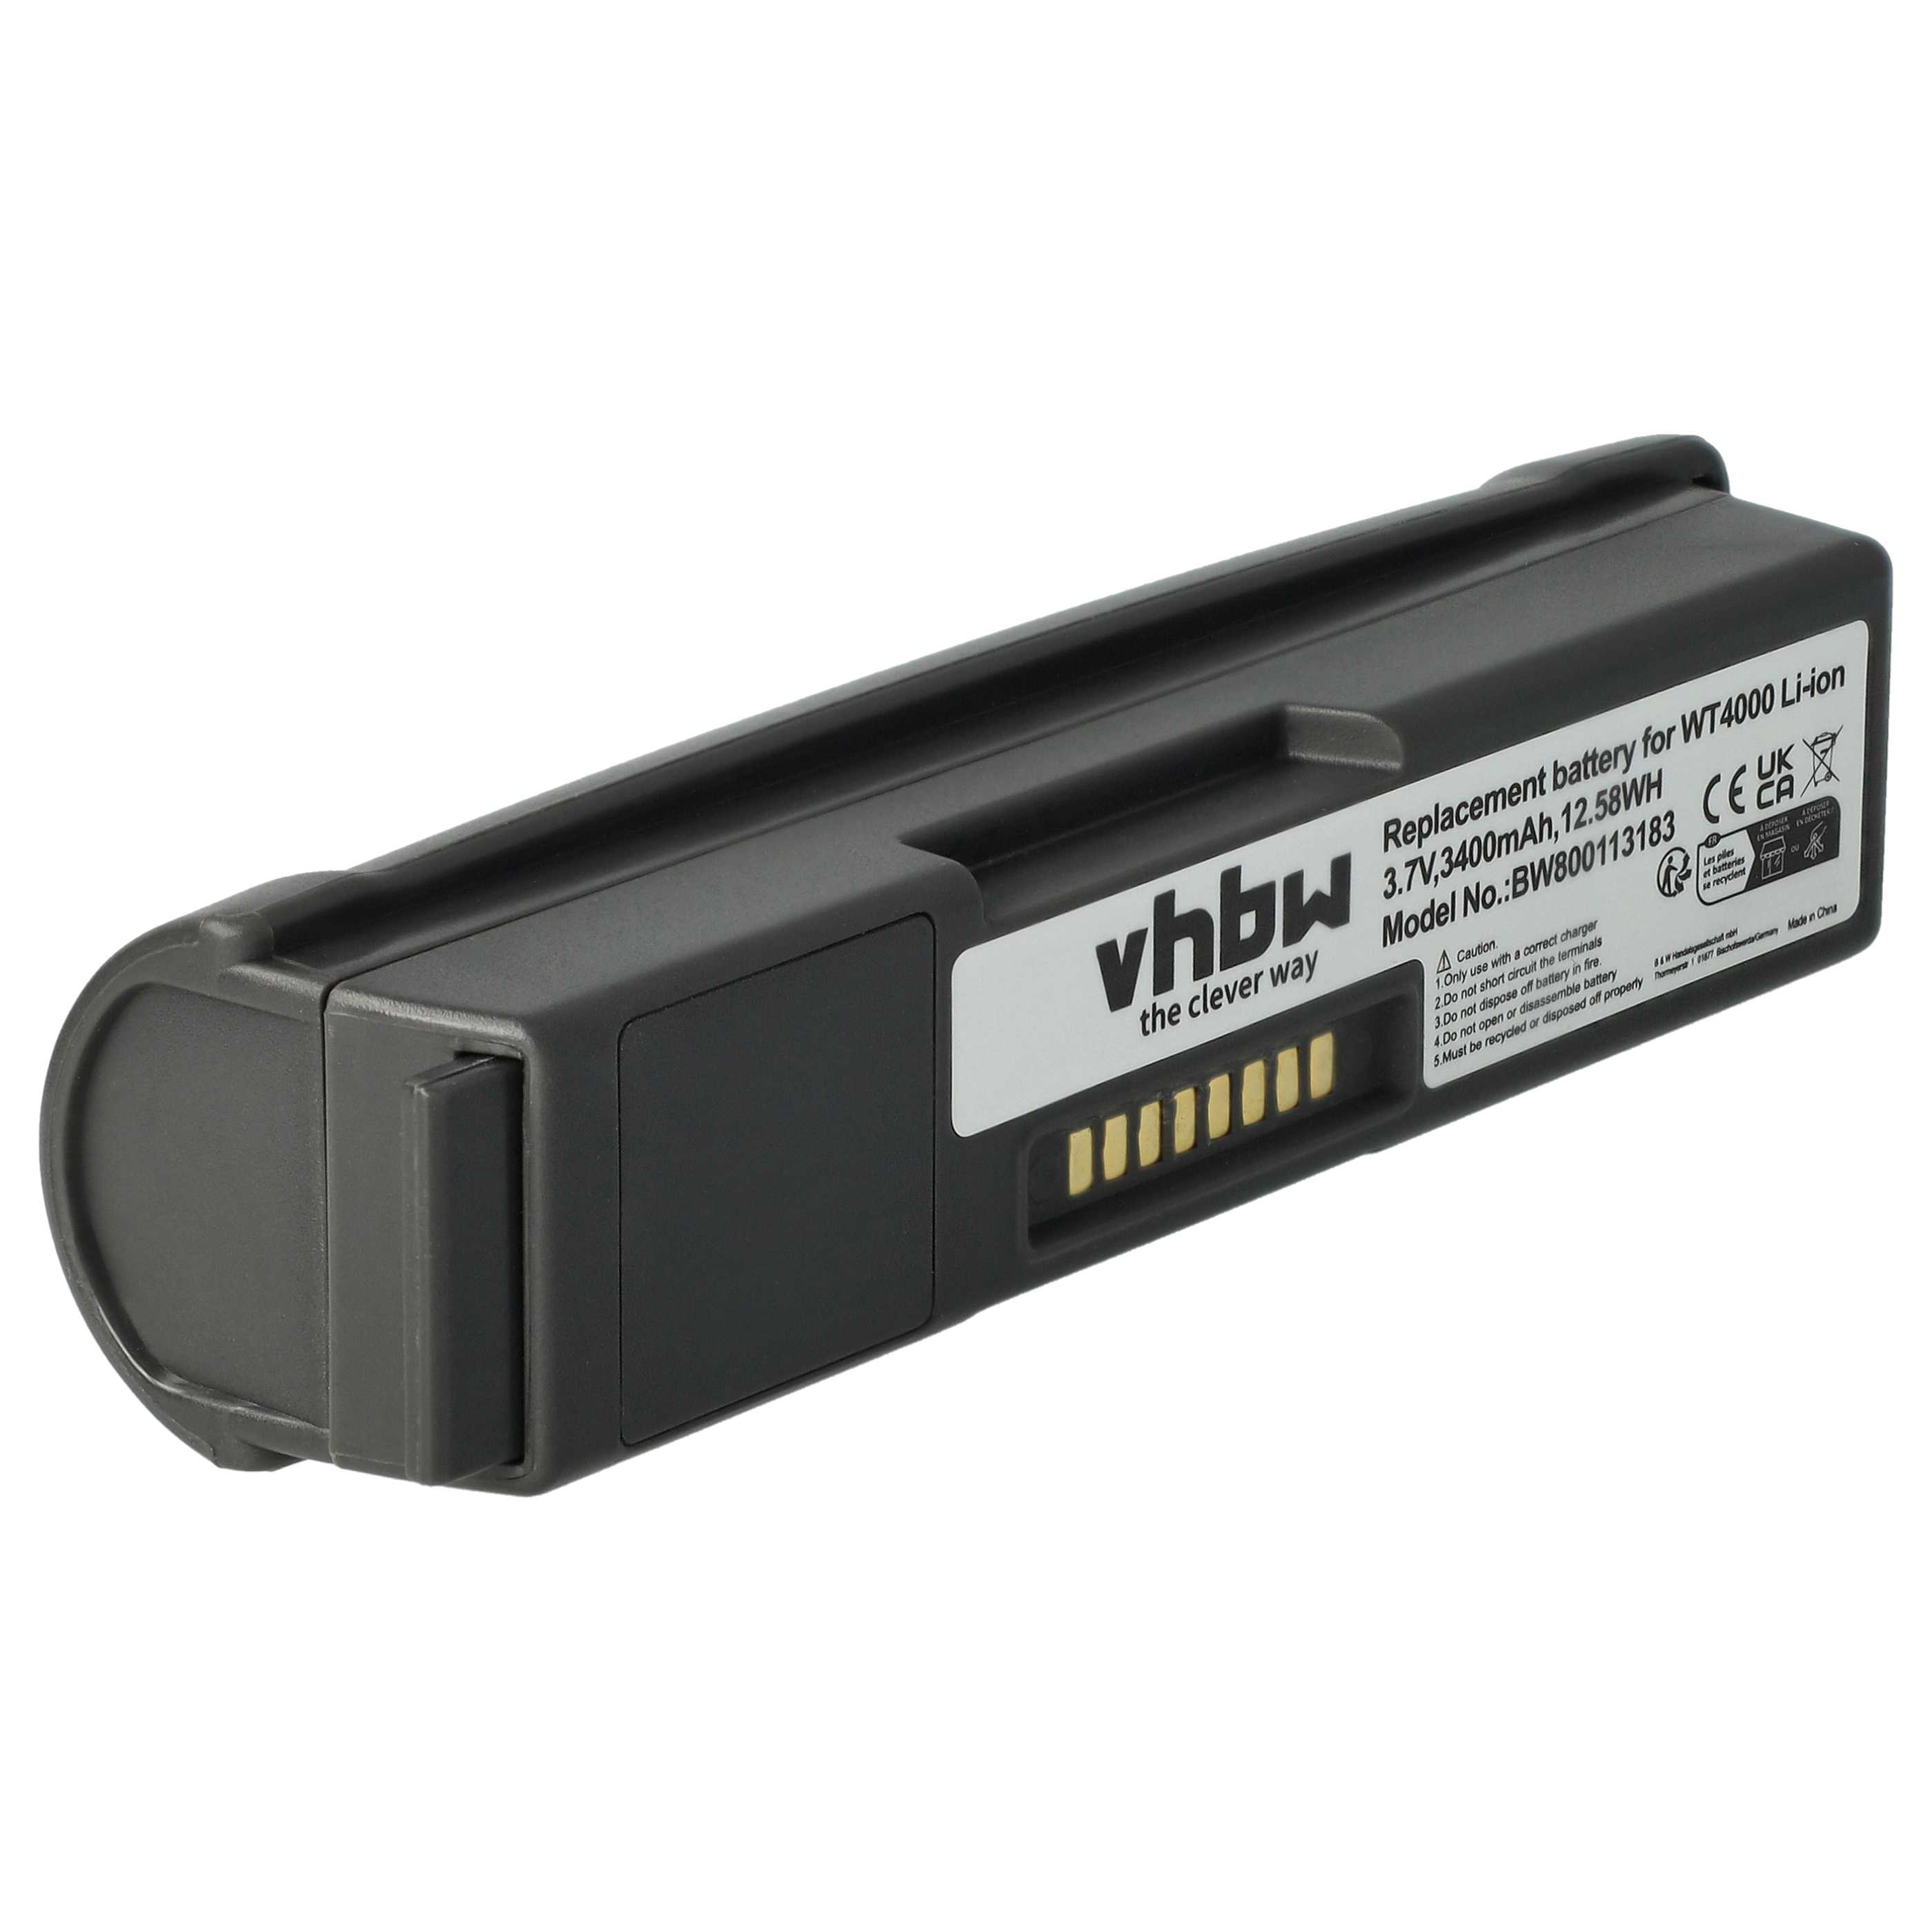 Batterie remplace Symbol 55-000166-01, 82-90005-03 pour scanner de code-barre - 3400mAh 3,7V Li-ion